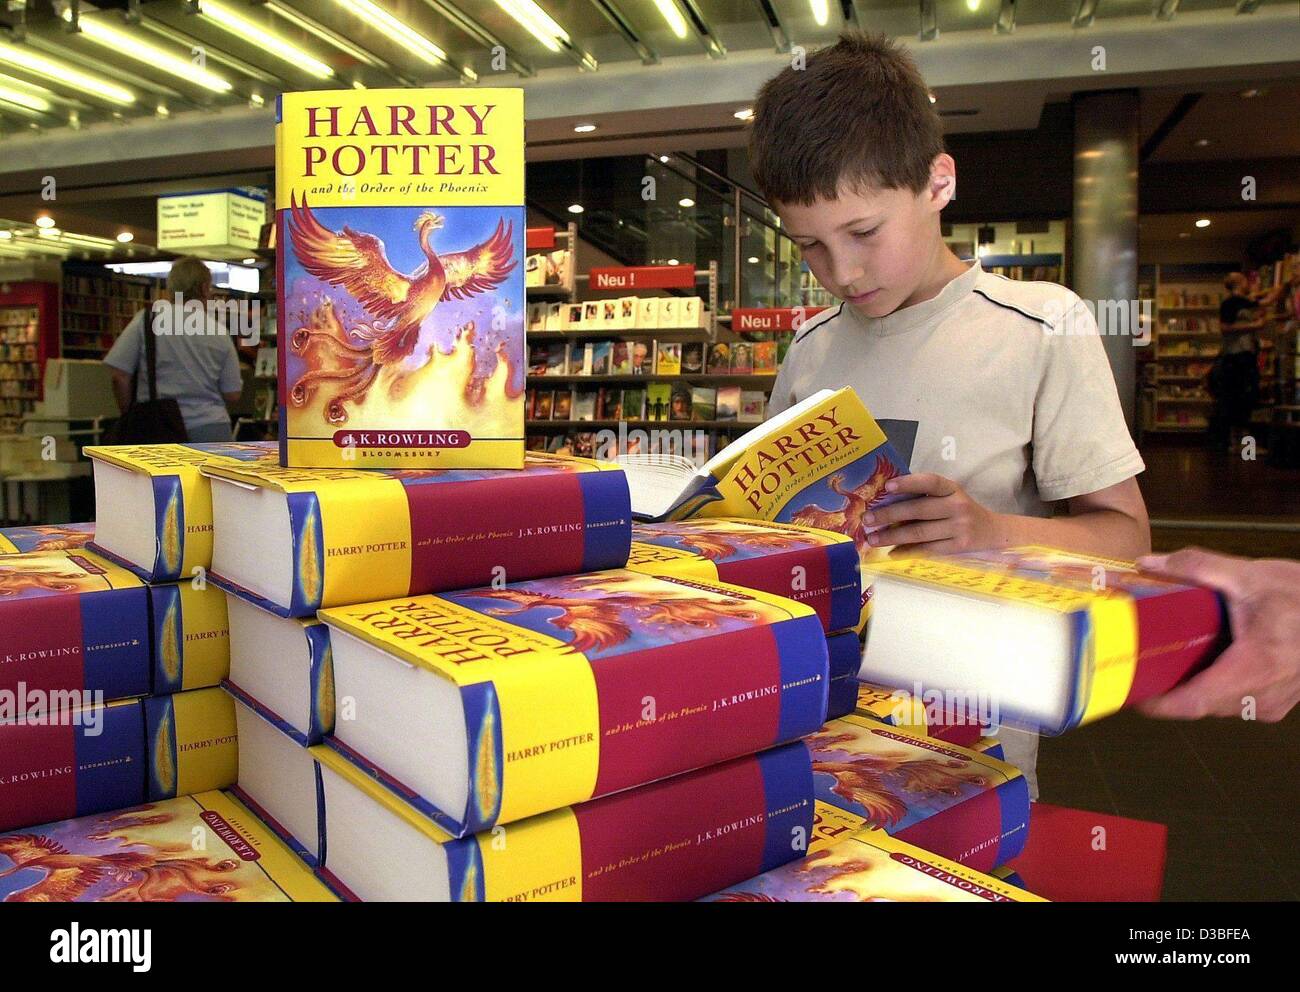 (Dpa) - neun-jährige Daniel blättert in der aktuellen Ausgabe von Harry Potter in einer Buchhandlung in Stuttgart, Deutschland, 21. Juni 2003. Die neueste Ausgabe von "Harry Potter und der Orden des Phönix" ist nur in englischer Sprache gedruckt und ist jetzt in Deutschland verfügbar. Die deutsche Ausgabe erscheint am 8 Nove Stockfoto